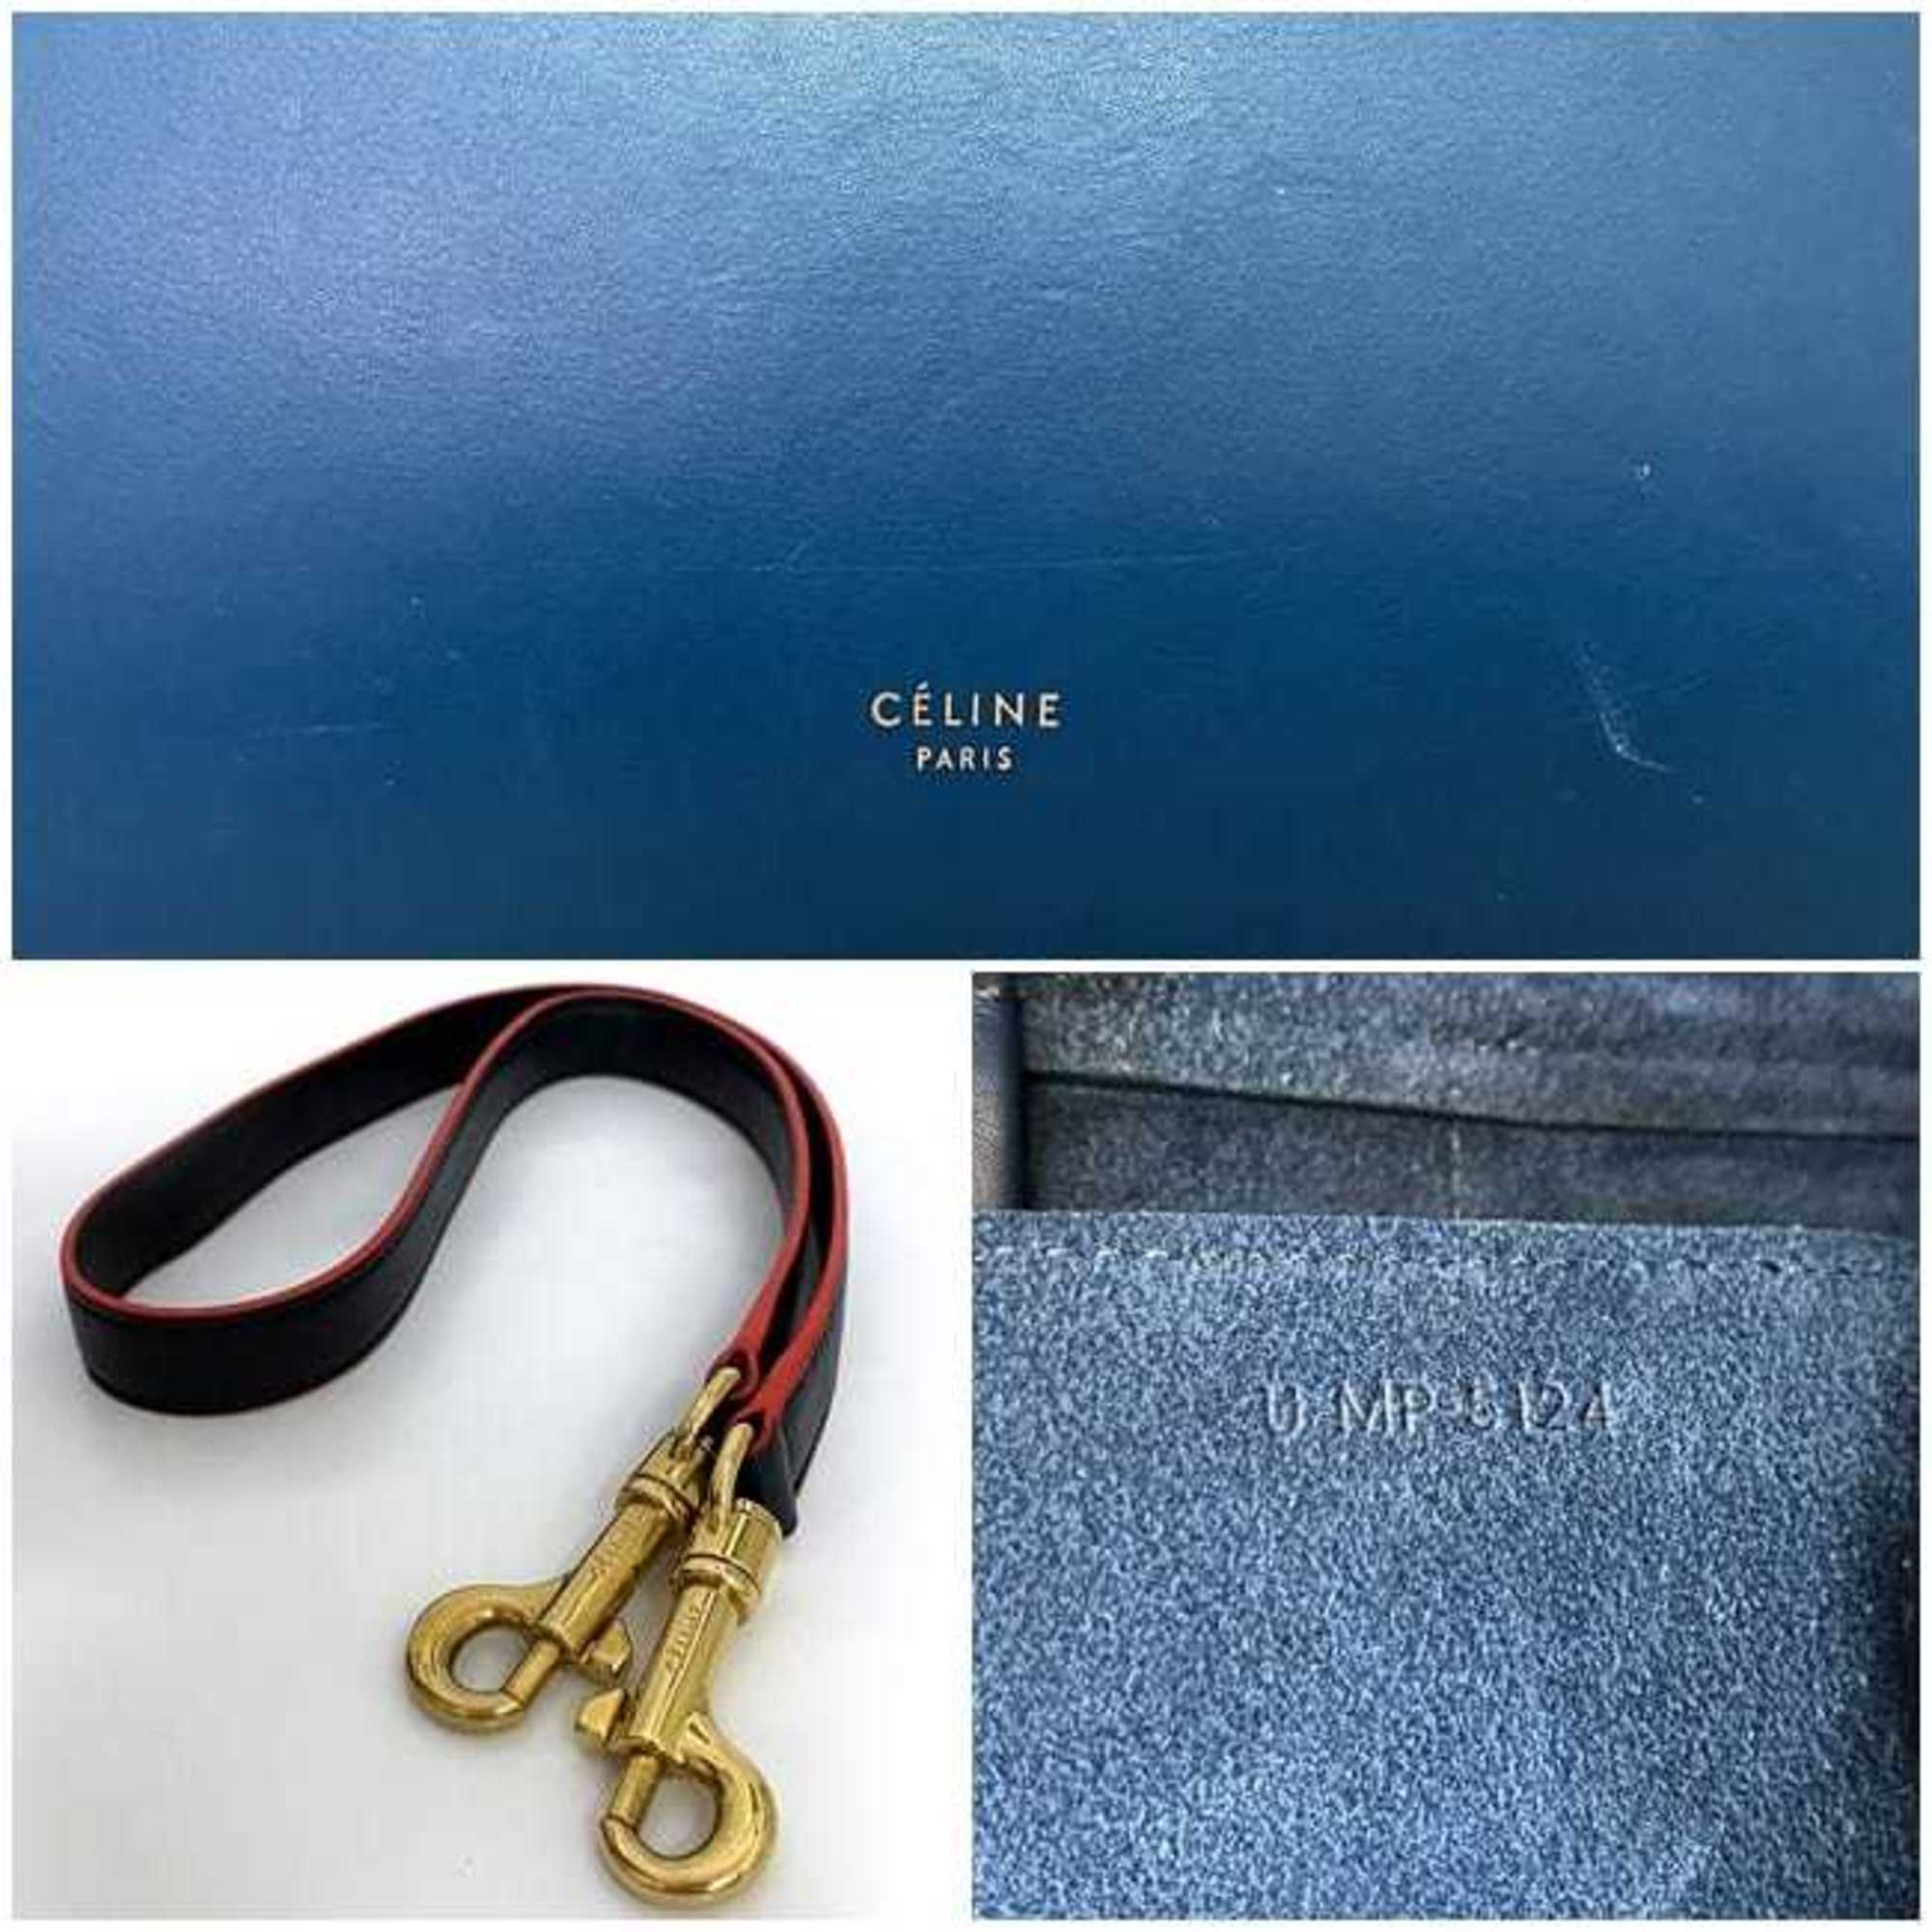 CELINE belt bag blue black red bicolor 2way leather handbag flap shoulder ladies